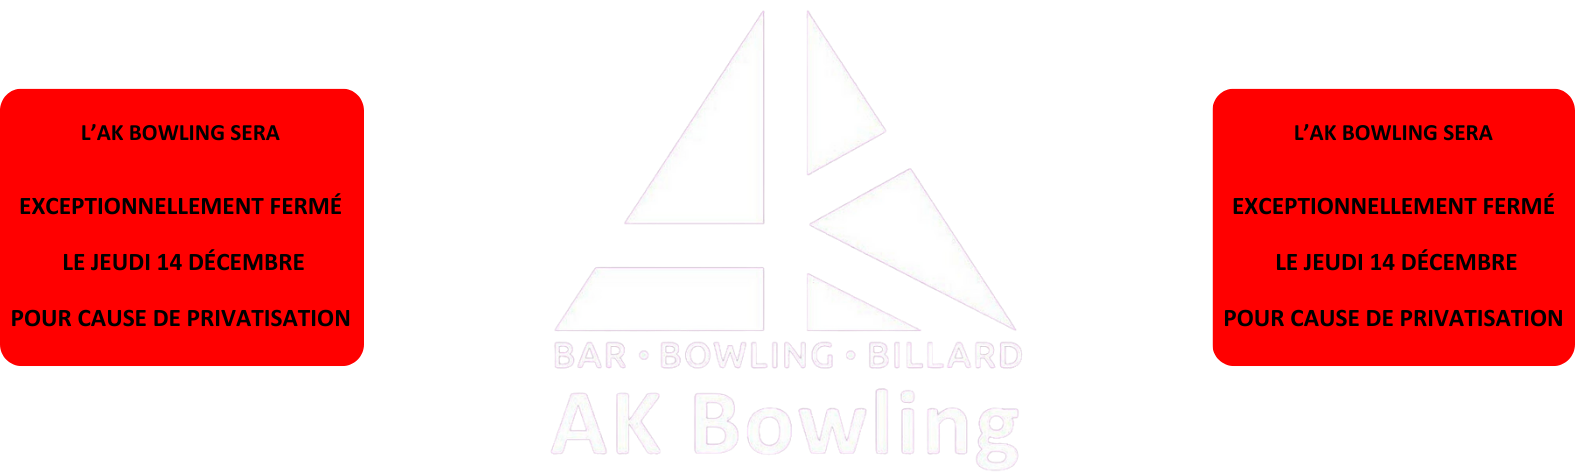 AK Bowling